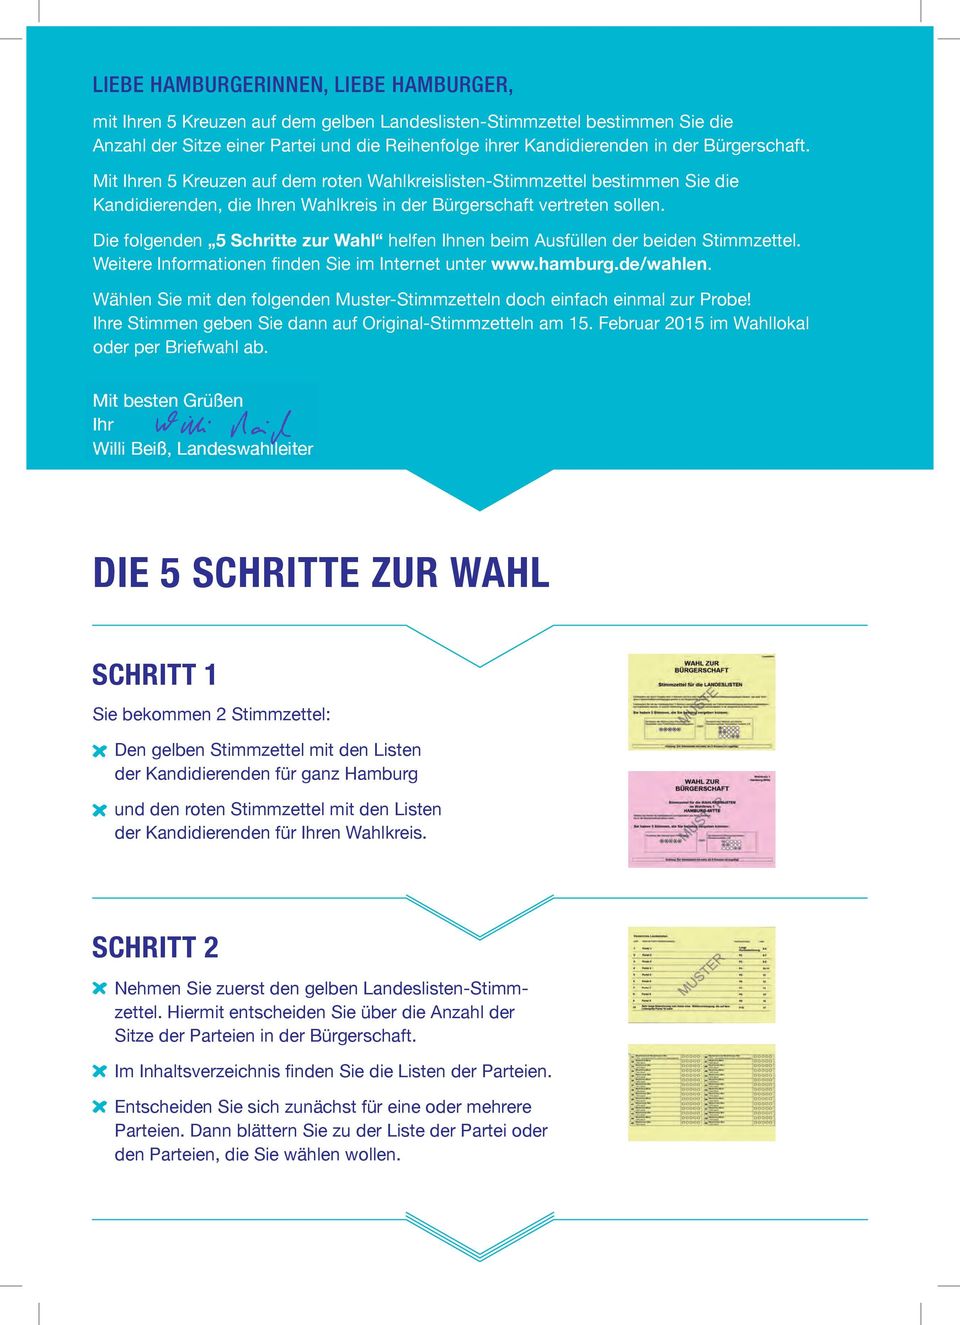 Die folgenden Schritte zur Wahl helfen Ihnen beim Ausfüllen der beiden Stimmzettel. Weitere Informationen finden Sie im Internet unter www.hamburg.de/wahlen.